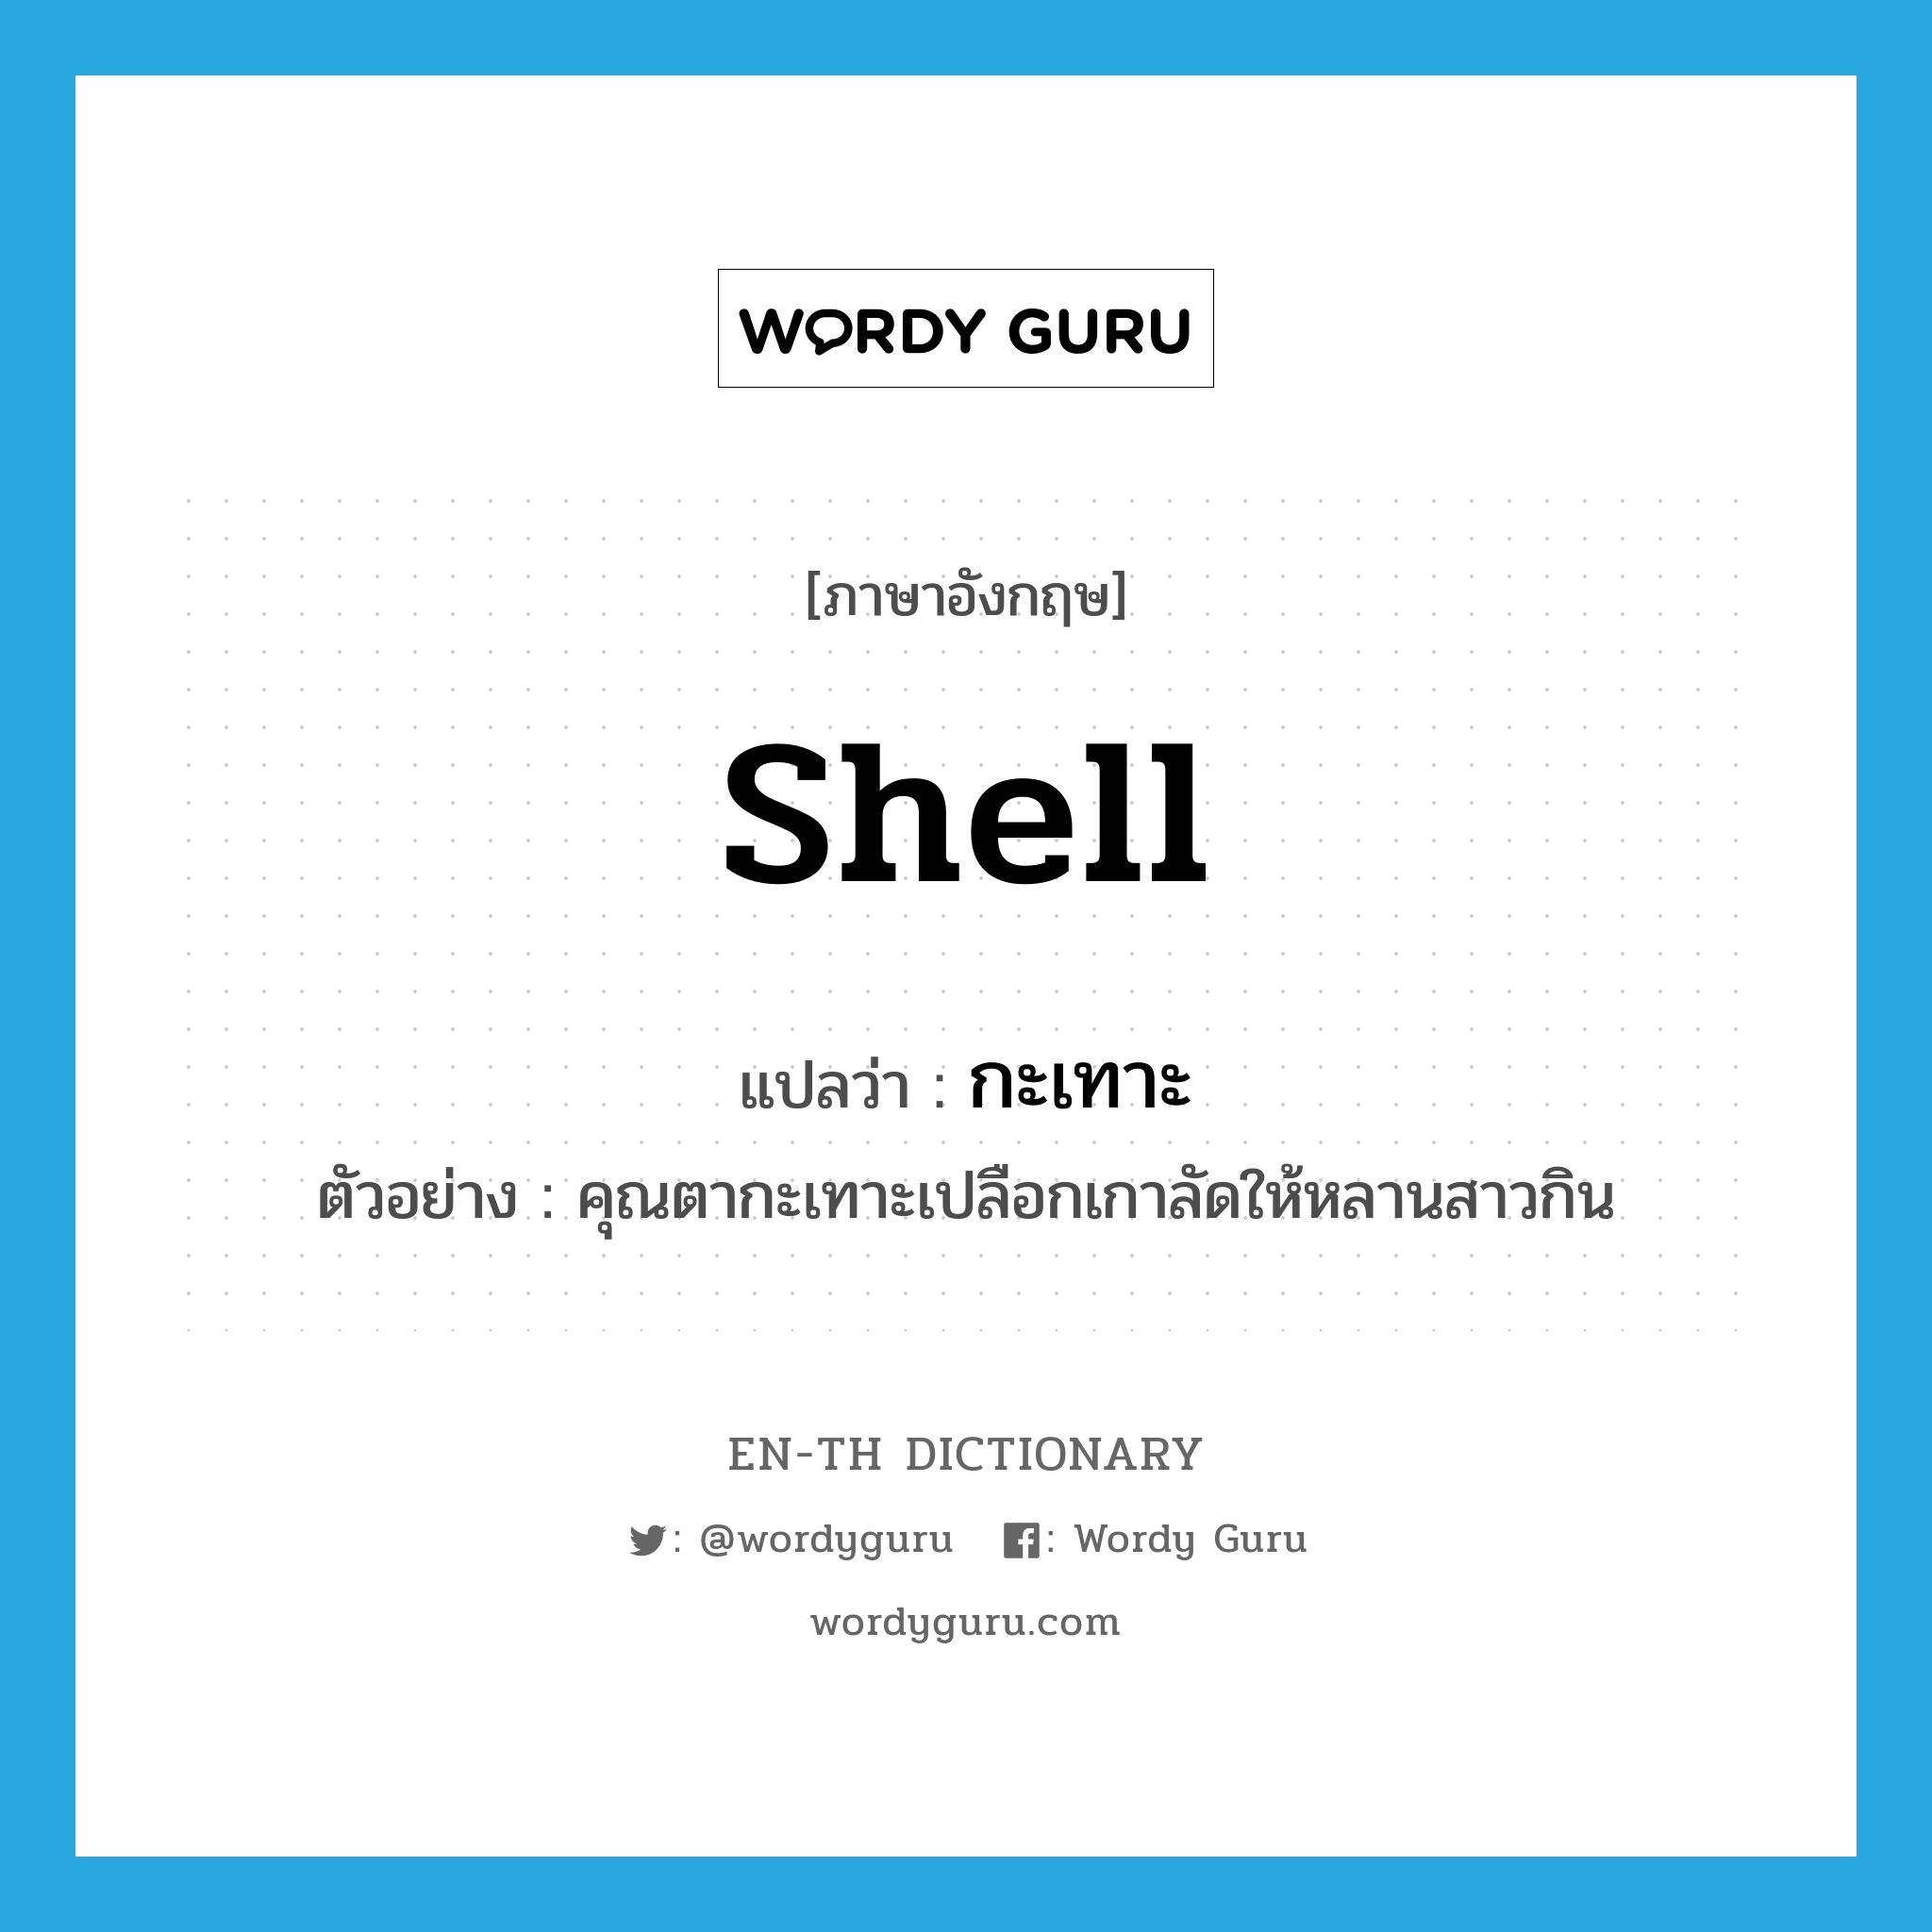 shell แปลว่า?, คำศัพท์ภาษาอังกฤษ shell แปลว่า กะเทาะ ประเภท V ตัวอย่าง คุณตากะเทาะเปลือกเกาลัดให้หลานสาวกิน หมวด V